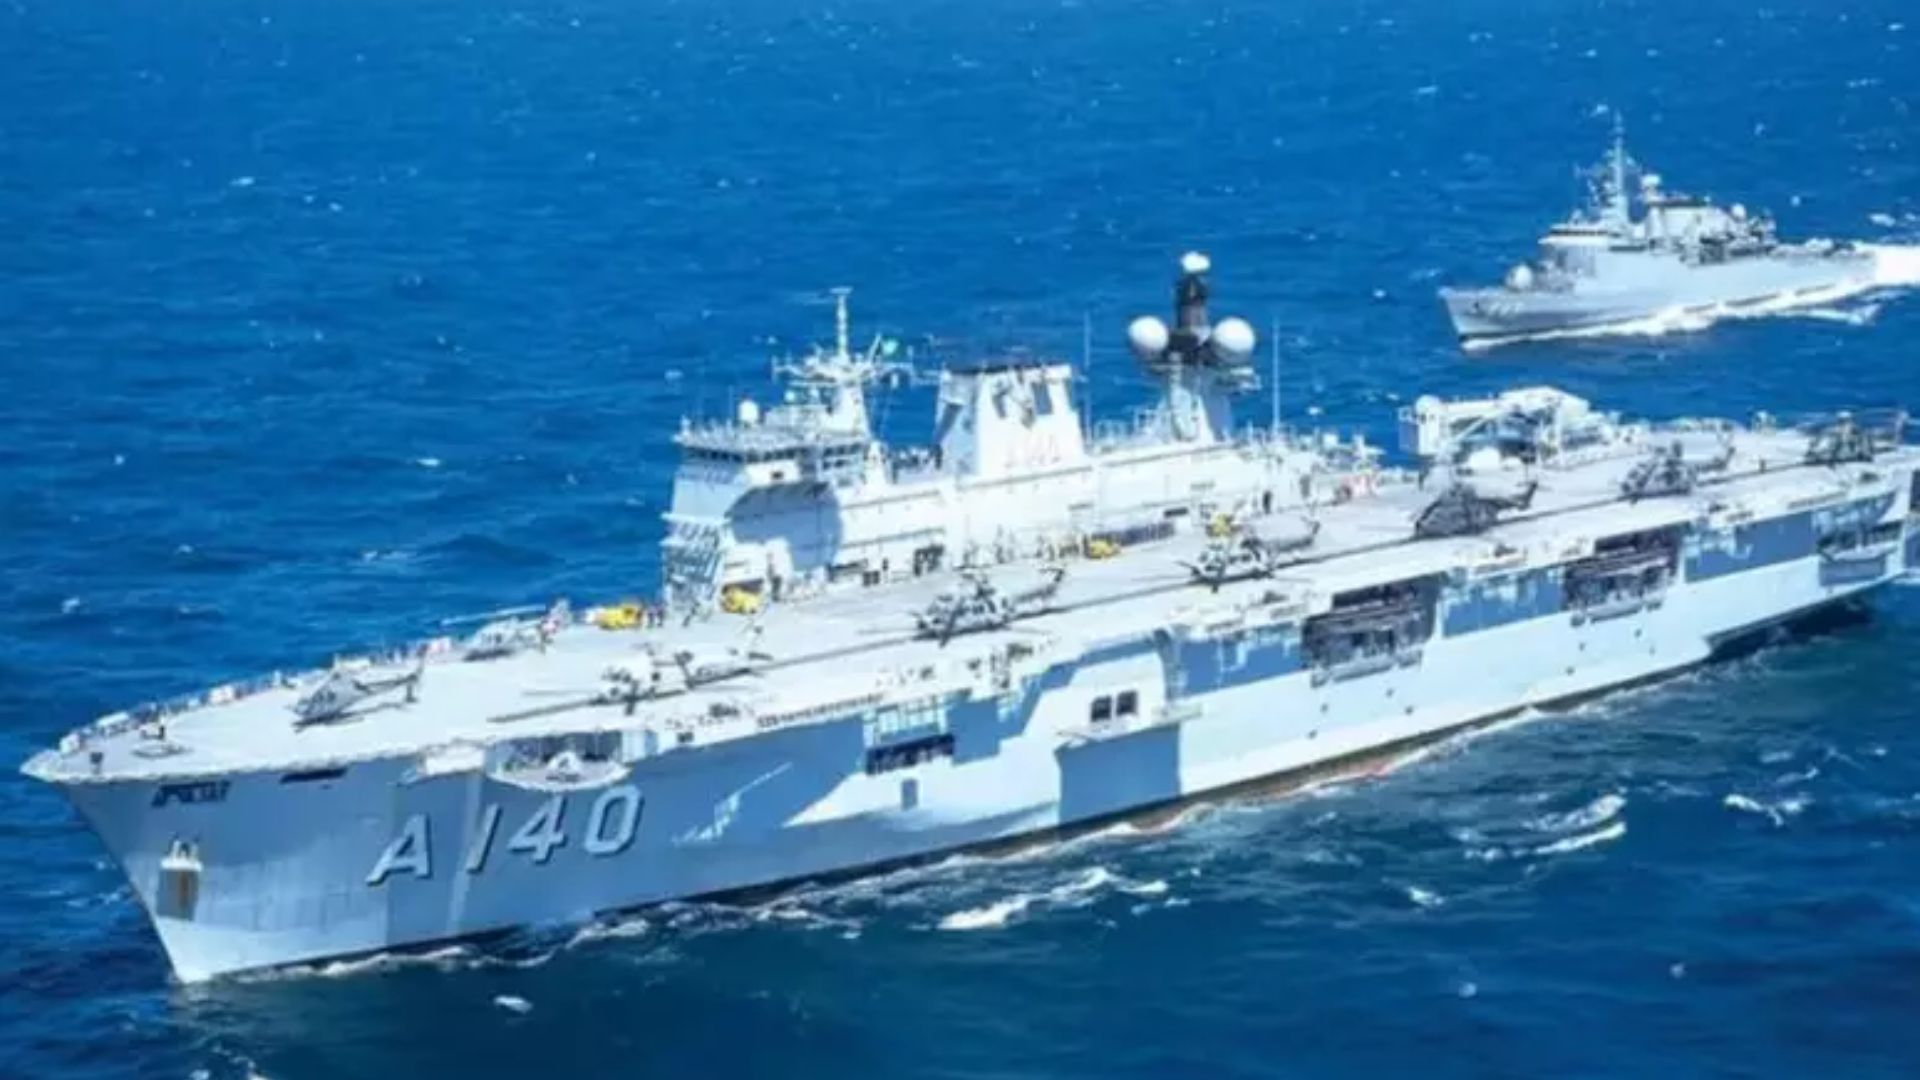 Marinha do Brasil aciona o maior navio de guerra da América do Sul para ajuda humanitária no Rio Grande do Sul.